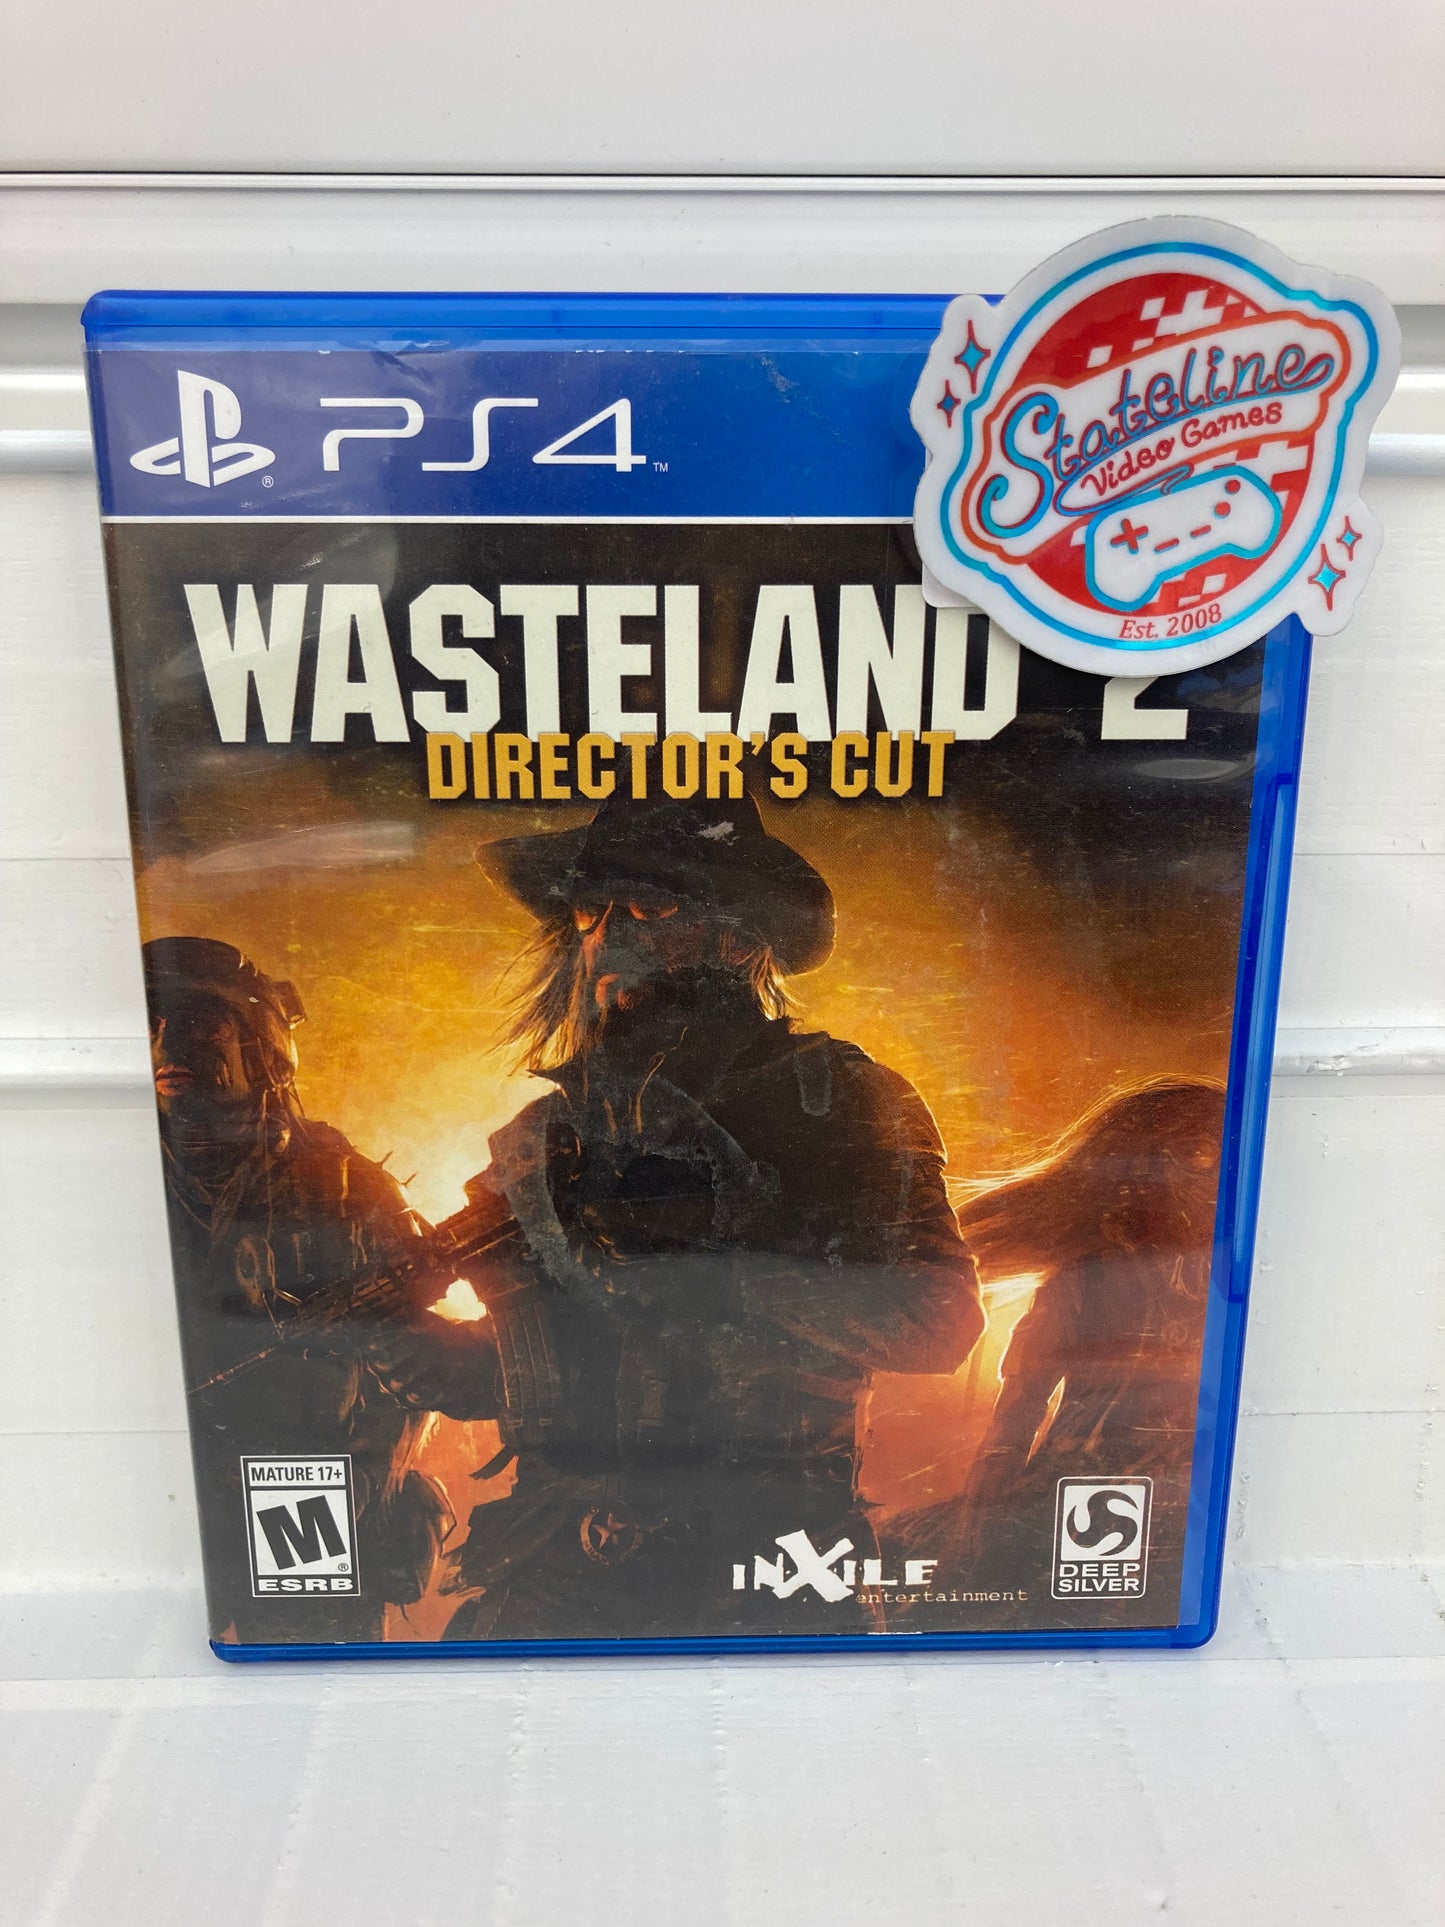 Wasteland 2: Director's Cut - Playstation 4